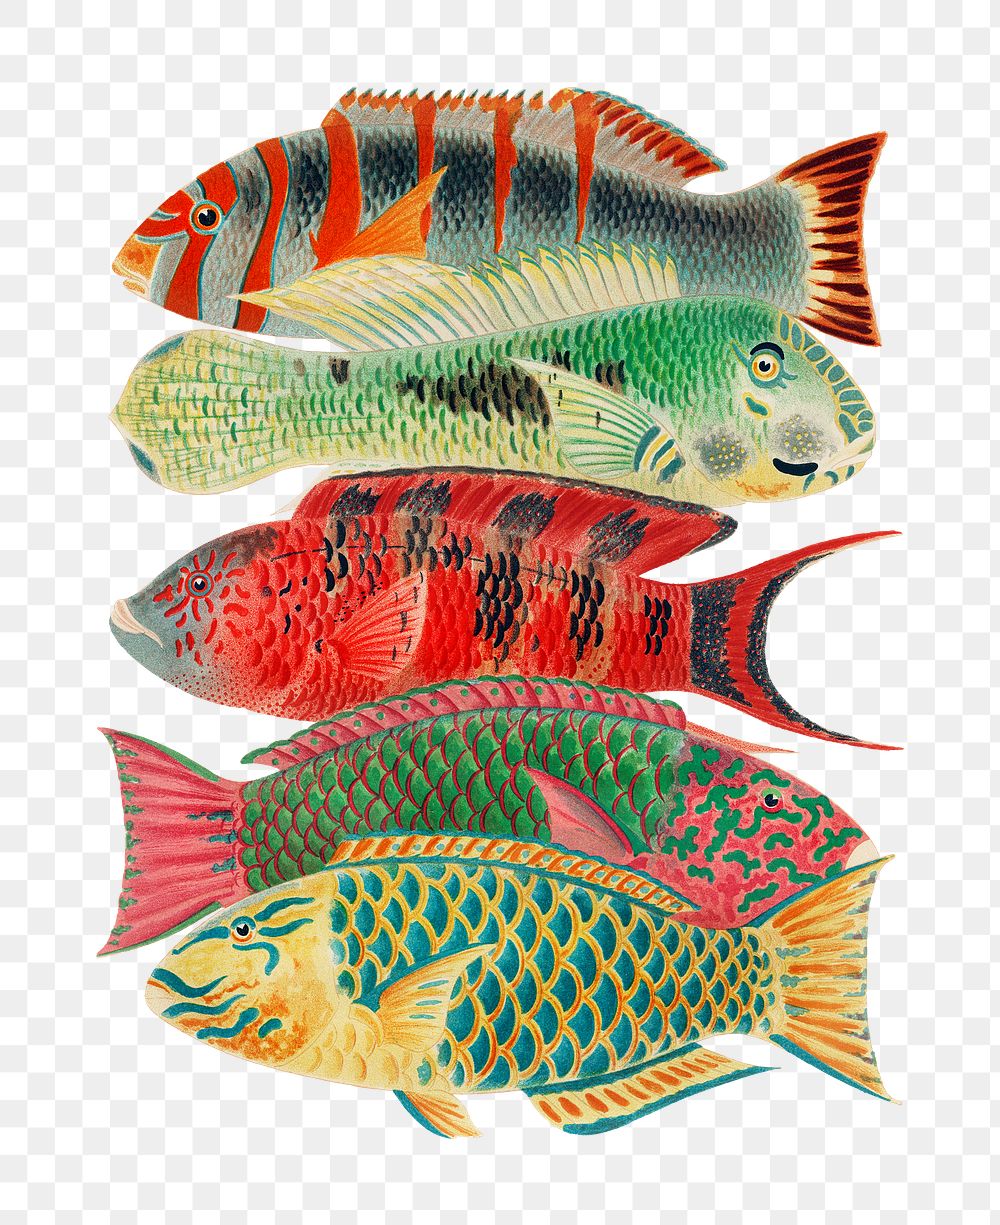 Fish png sticker, William Saville-Kent's  vintage illustration, transparent background